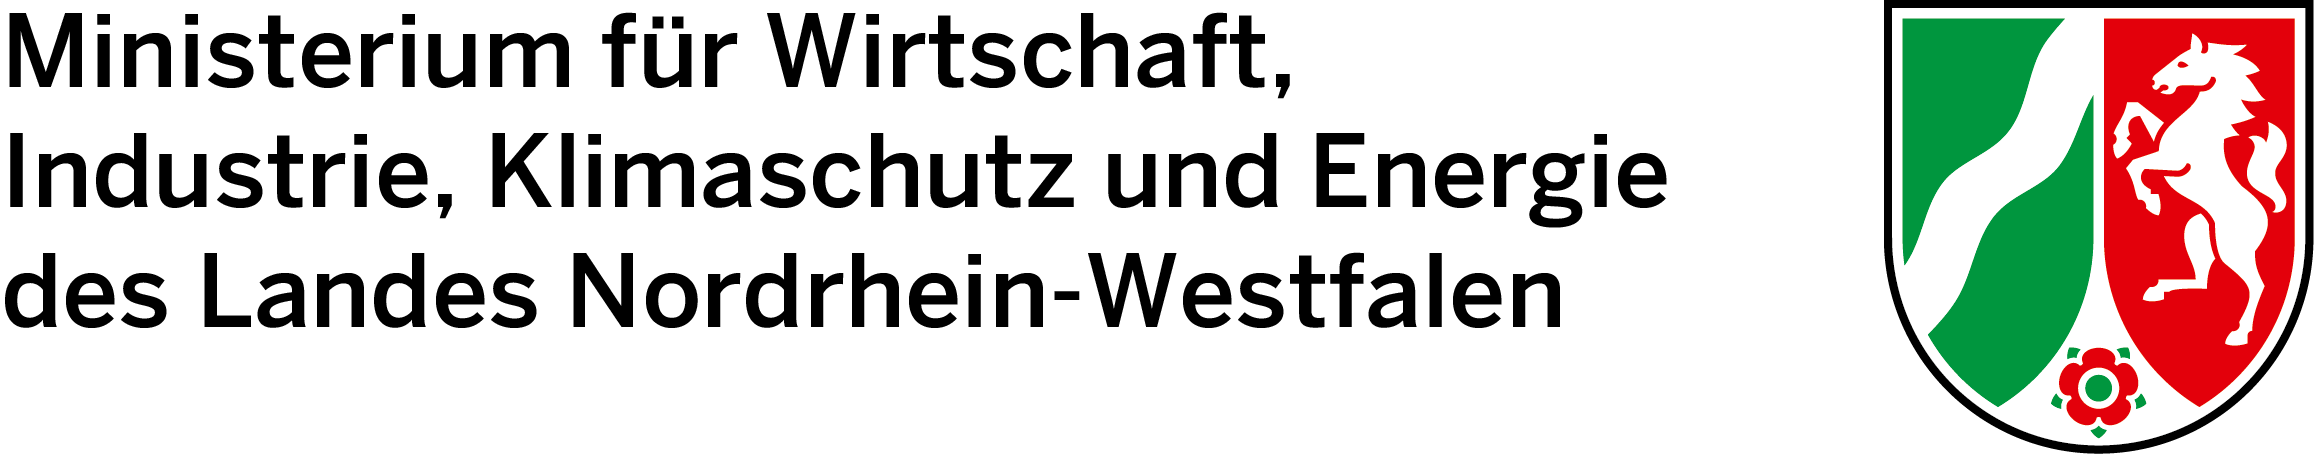 Logo des Ministeriums für Wirtschaft, Industrie, Klimaschutz und Energie des Landes Nordrhein-Westfalen